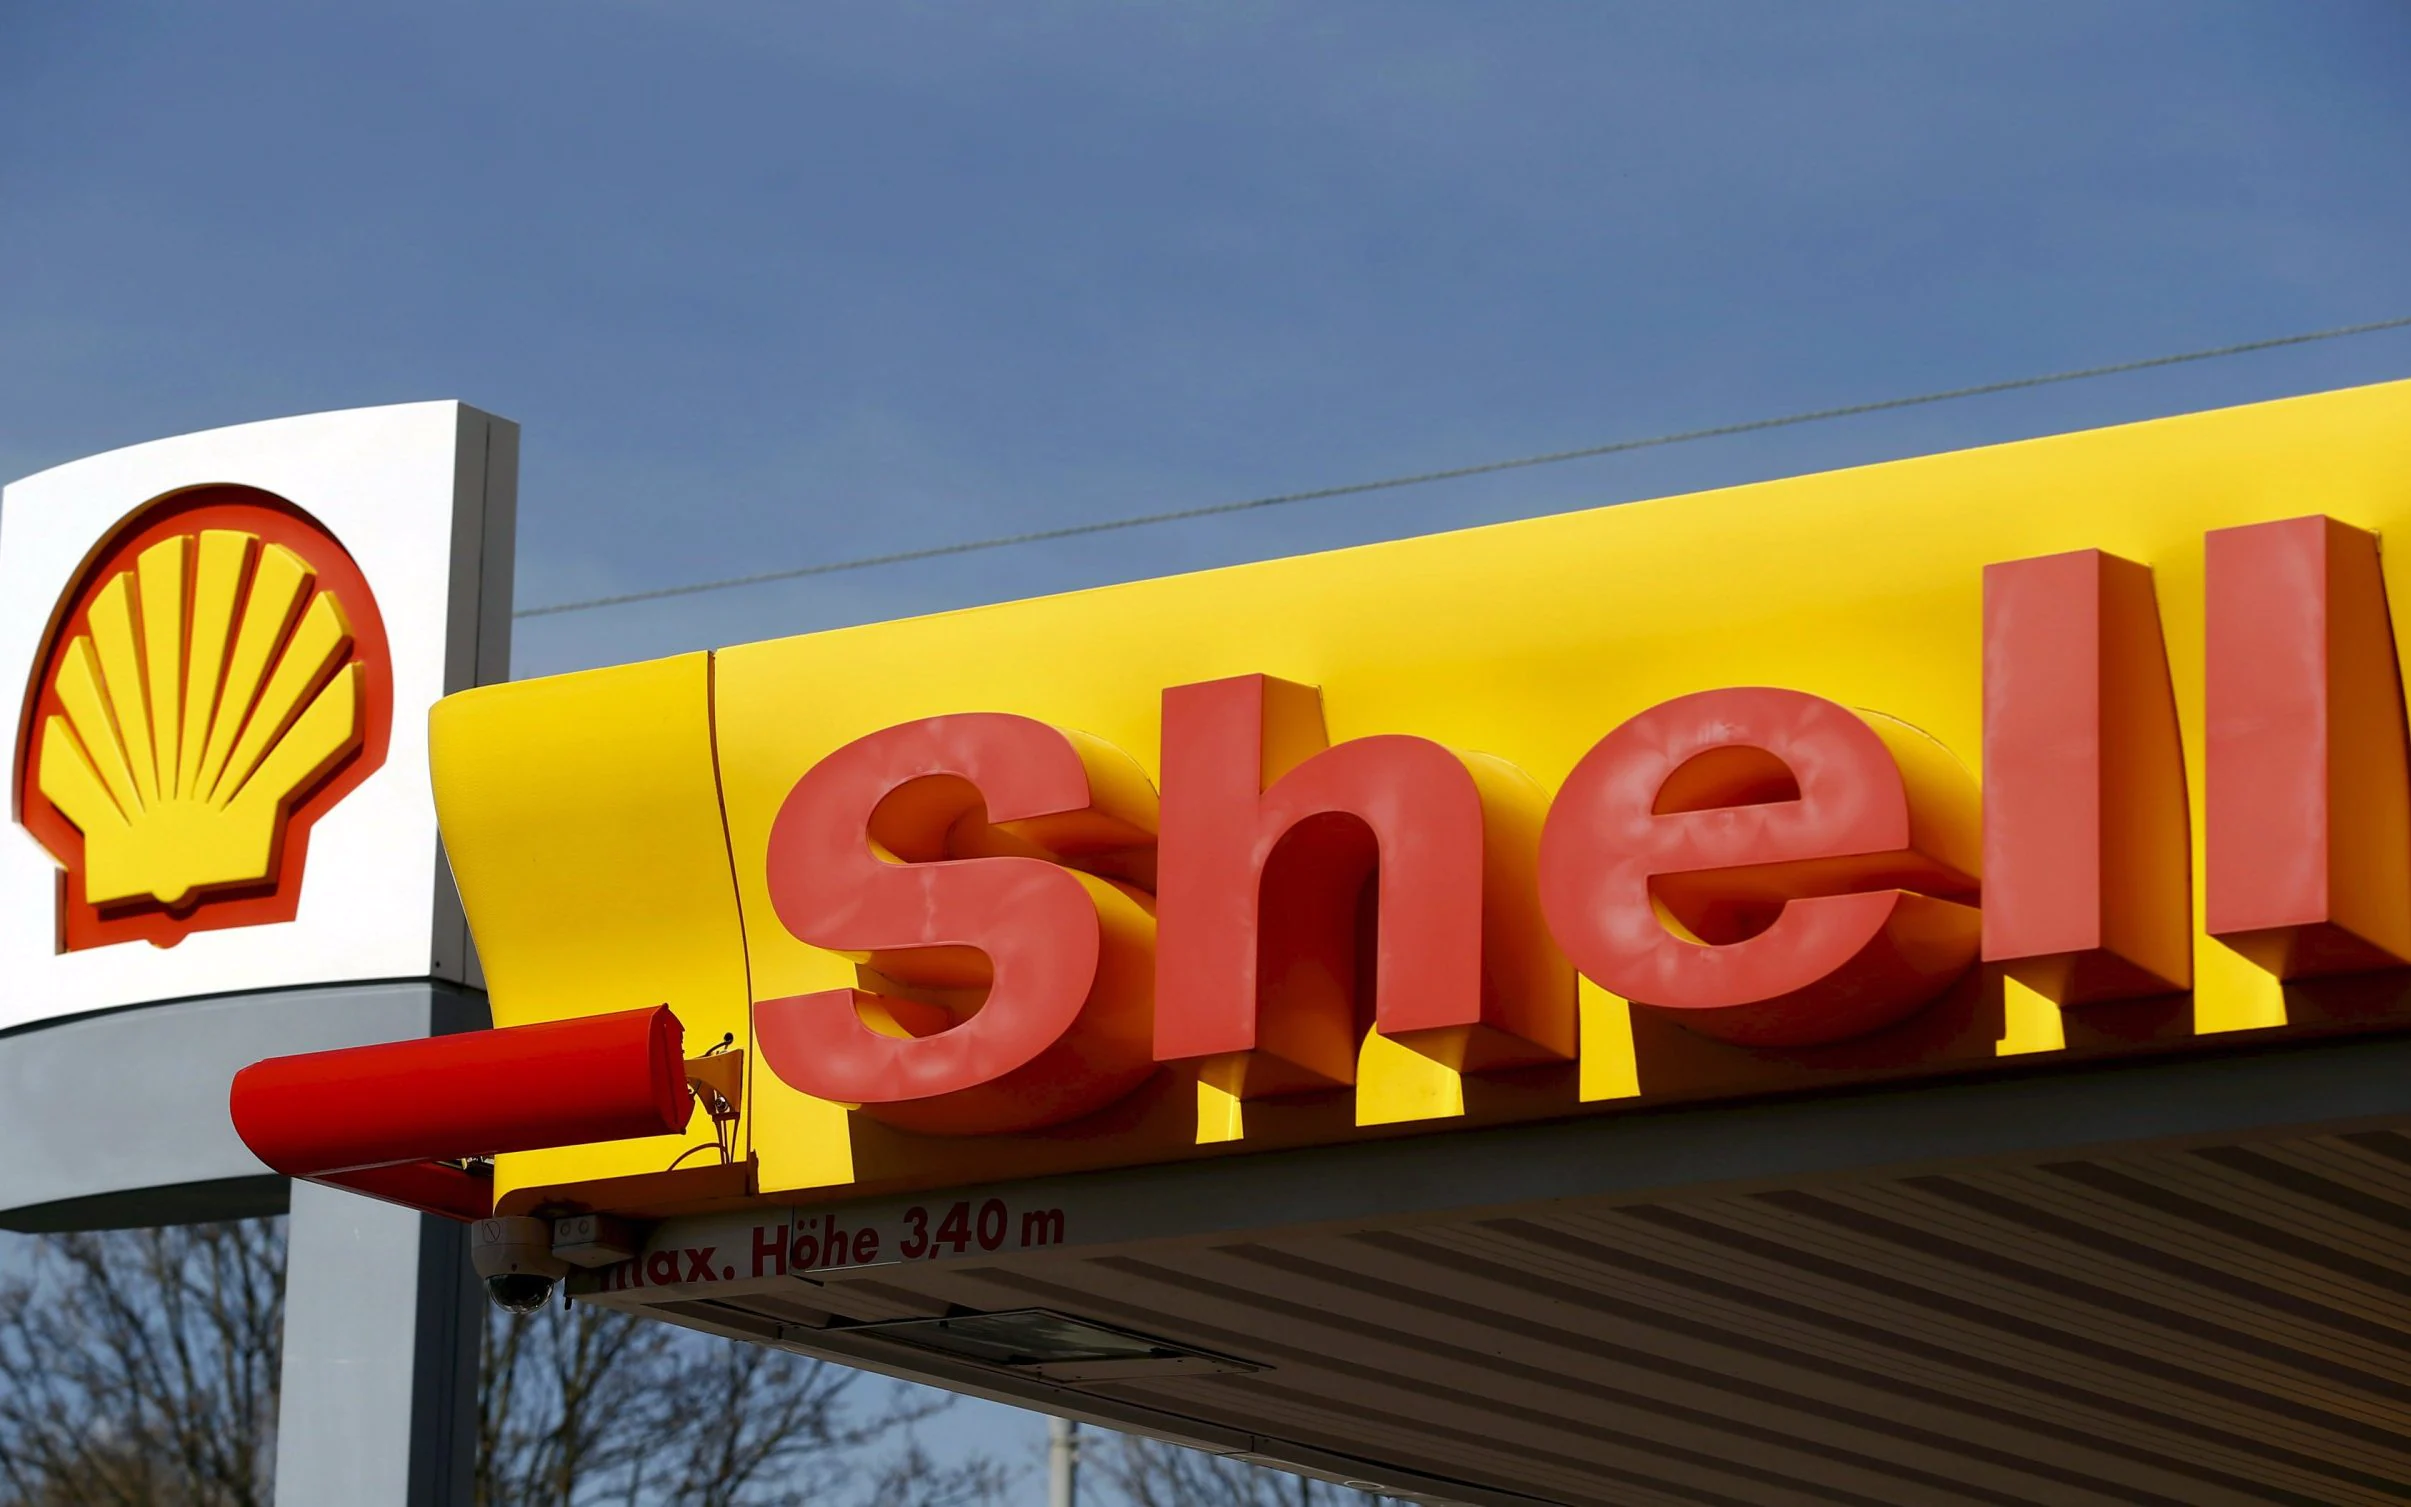 شركة Shell تدافع عن قرار شراء النفط الروسي وتعلن عن تبرعها بالأرباح لأوكرانيا